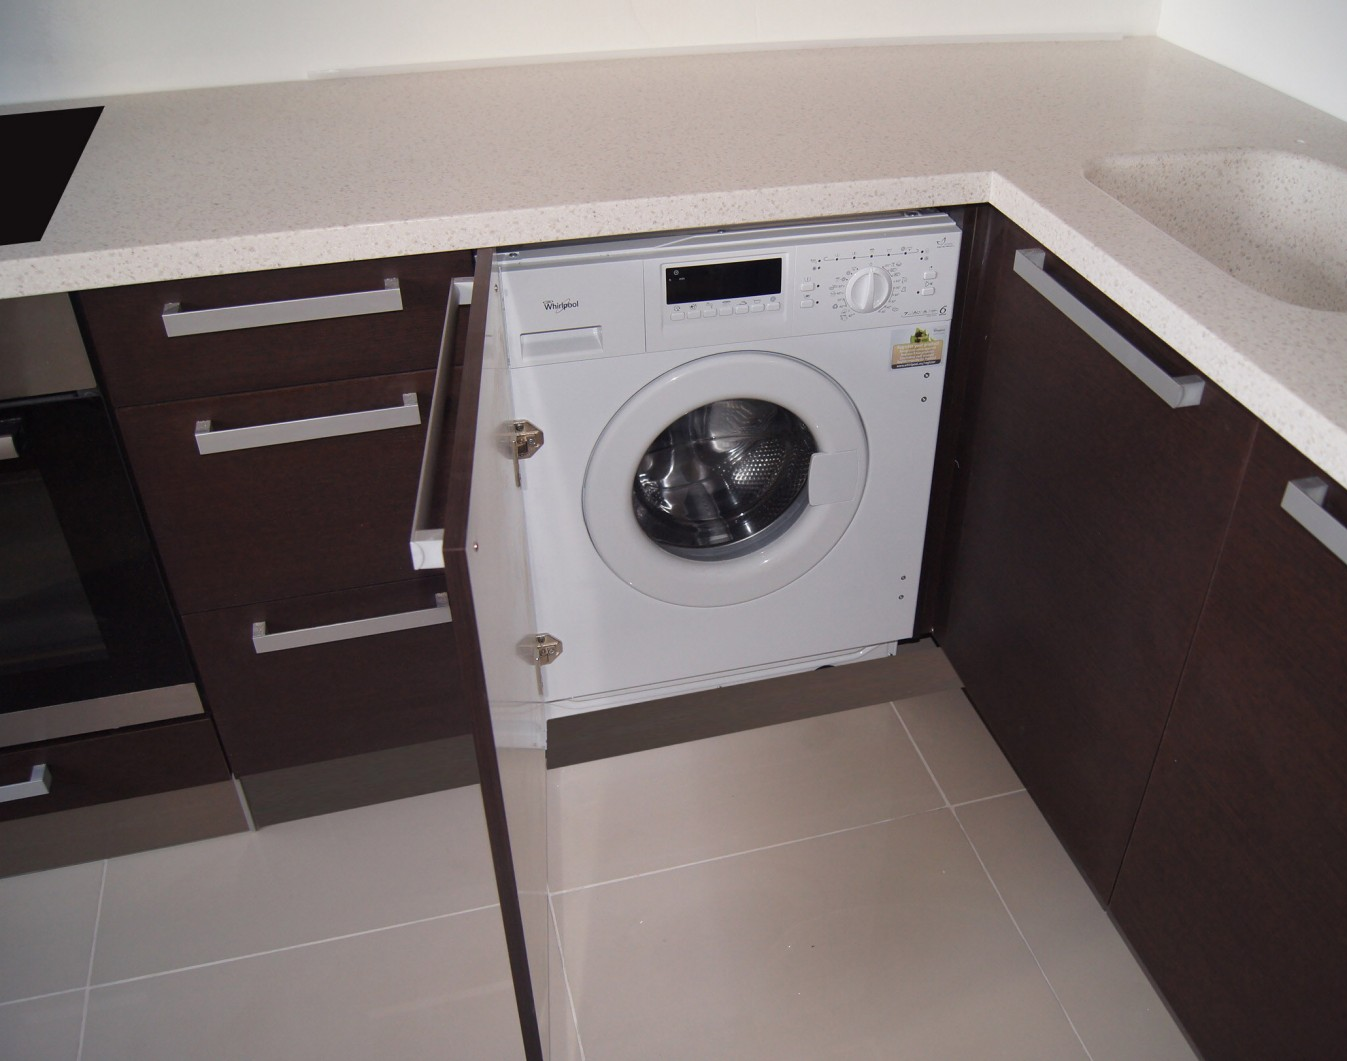 Кухня со стиральной машиной — особенности, правила и места установки, фото